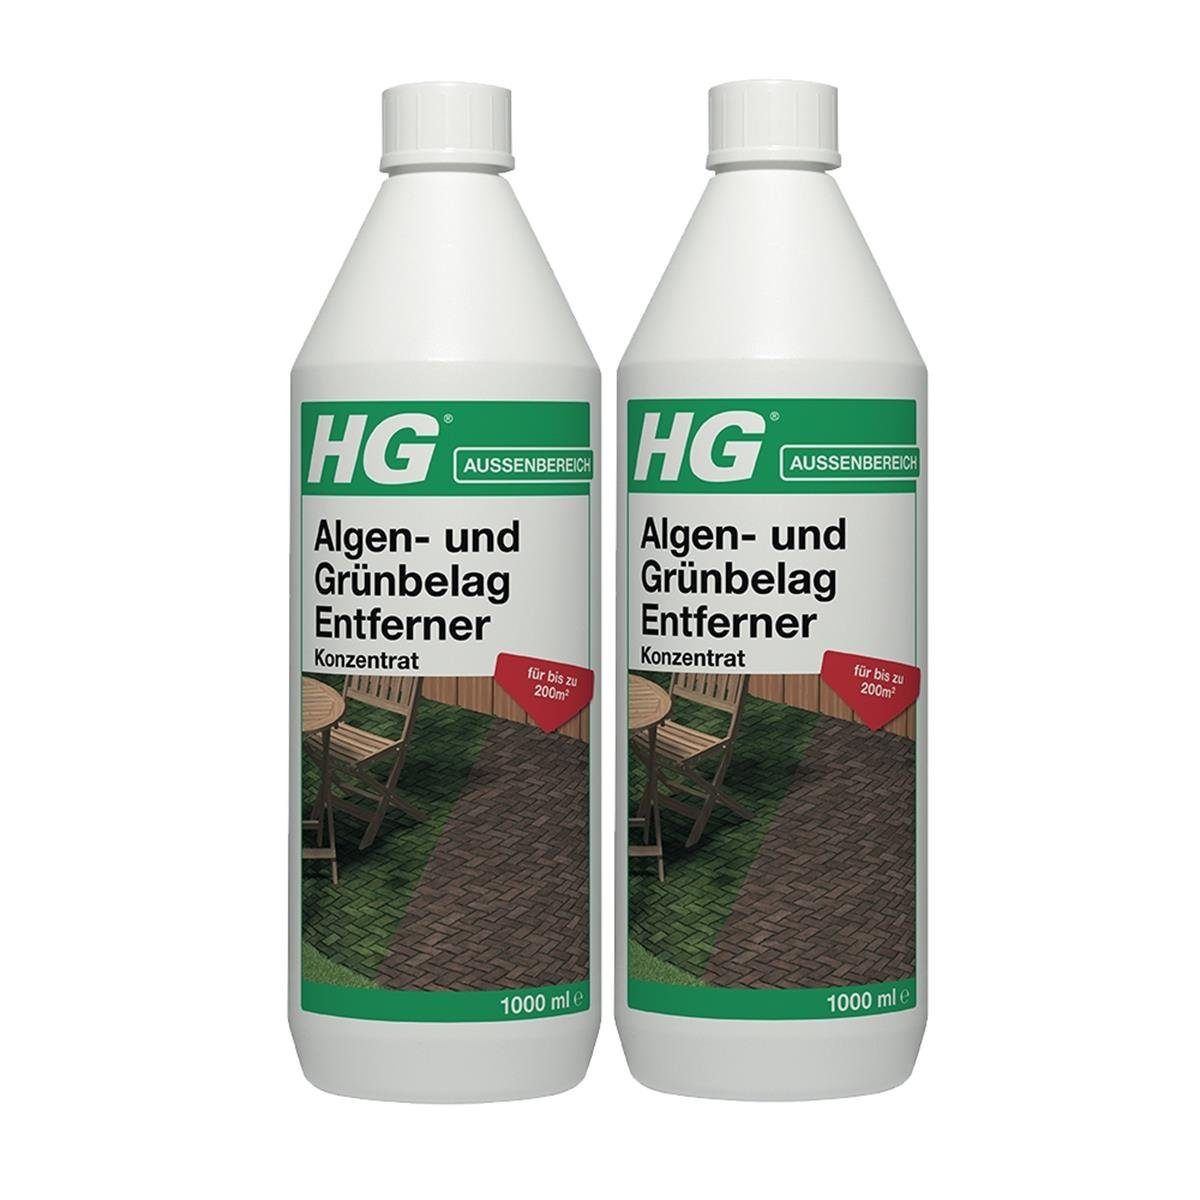 HG HG Algen- und Grünbelag Entferner Konzentrat 1L (2er Pack) Spezialwaschmittel